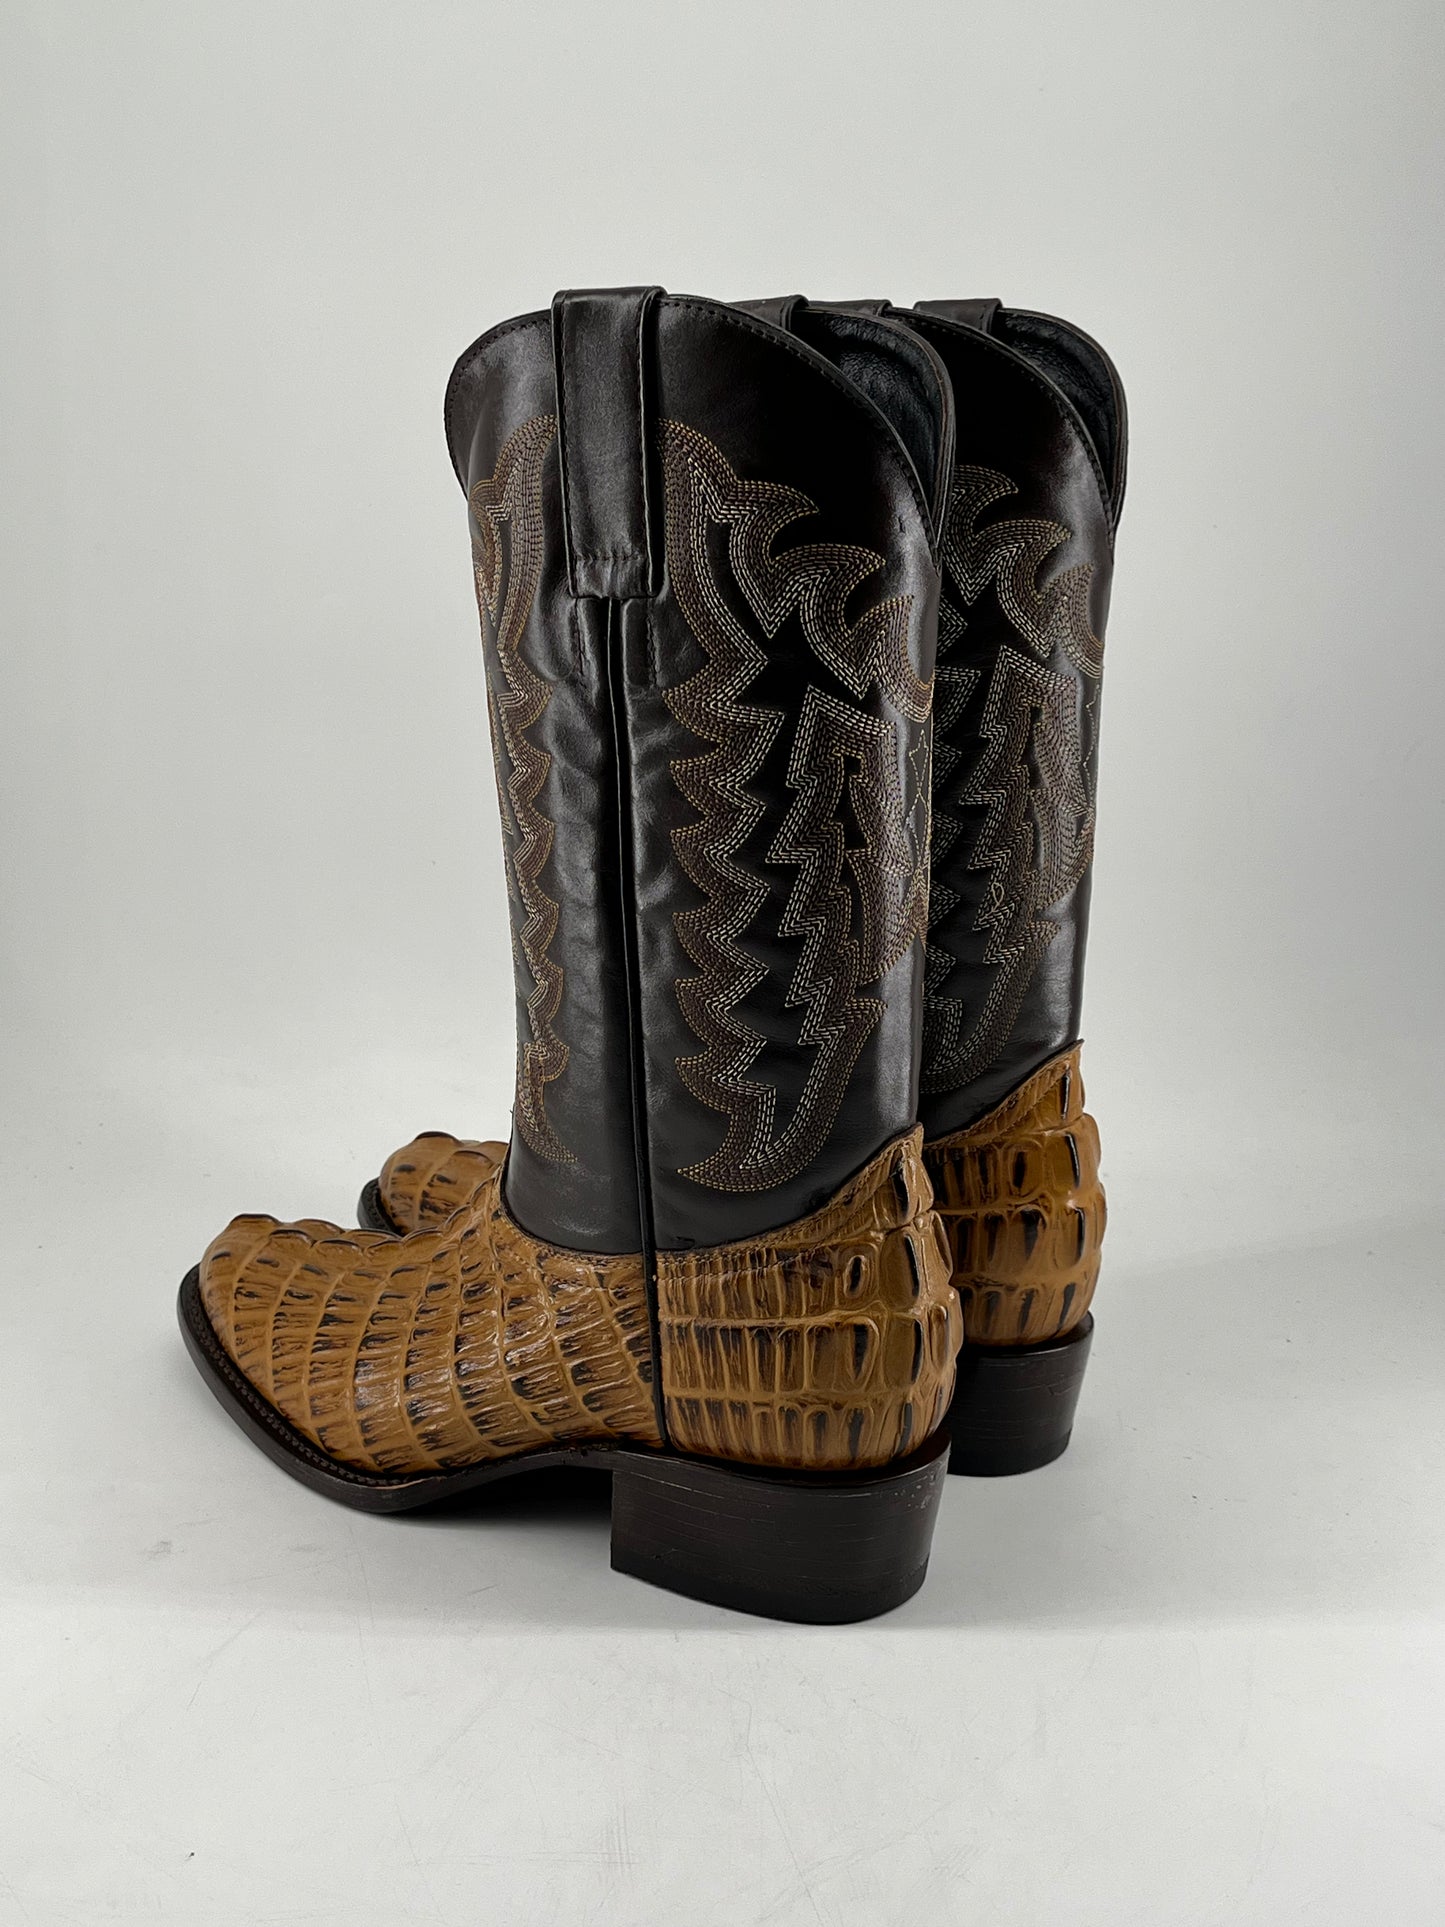 VAQ. Gurava Oval Cola Cocodrilo Cowboy Boot